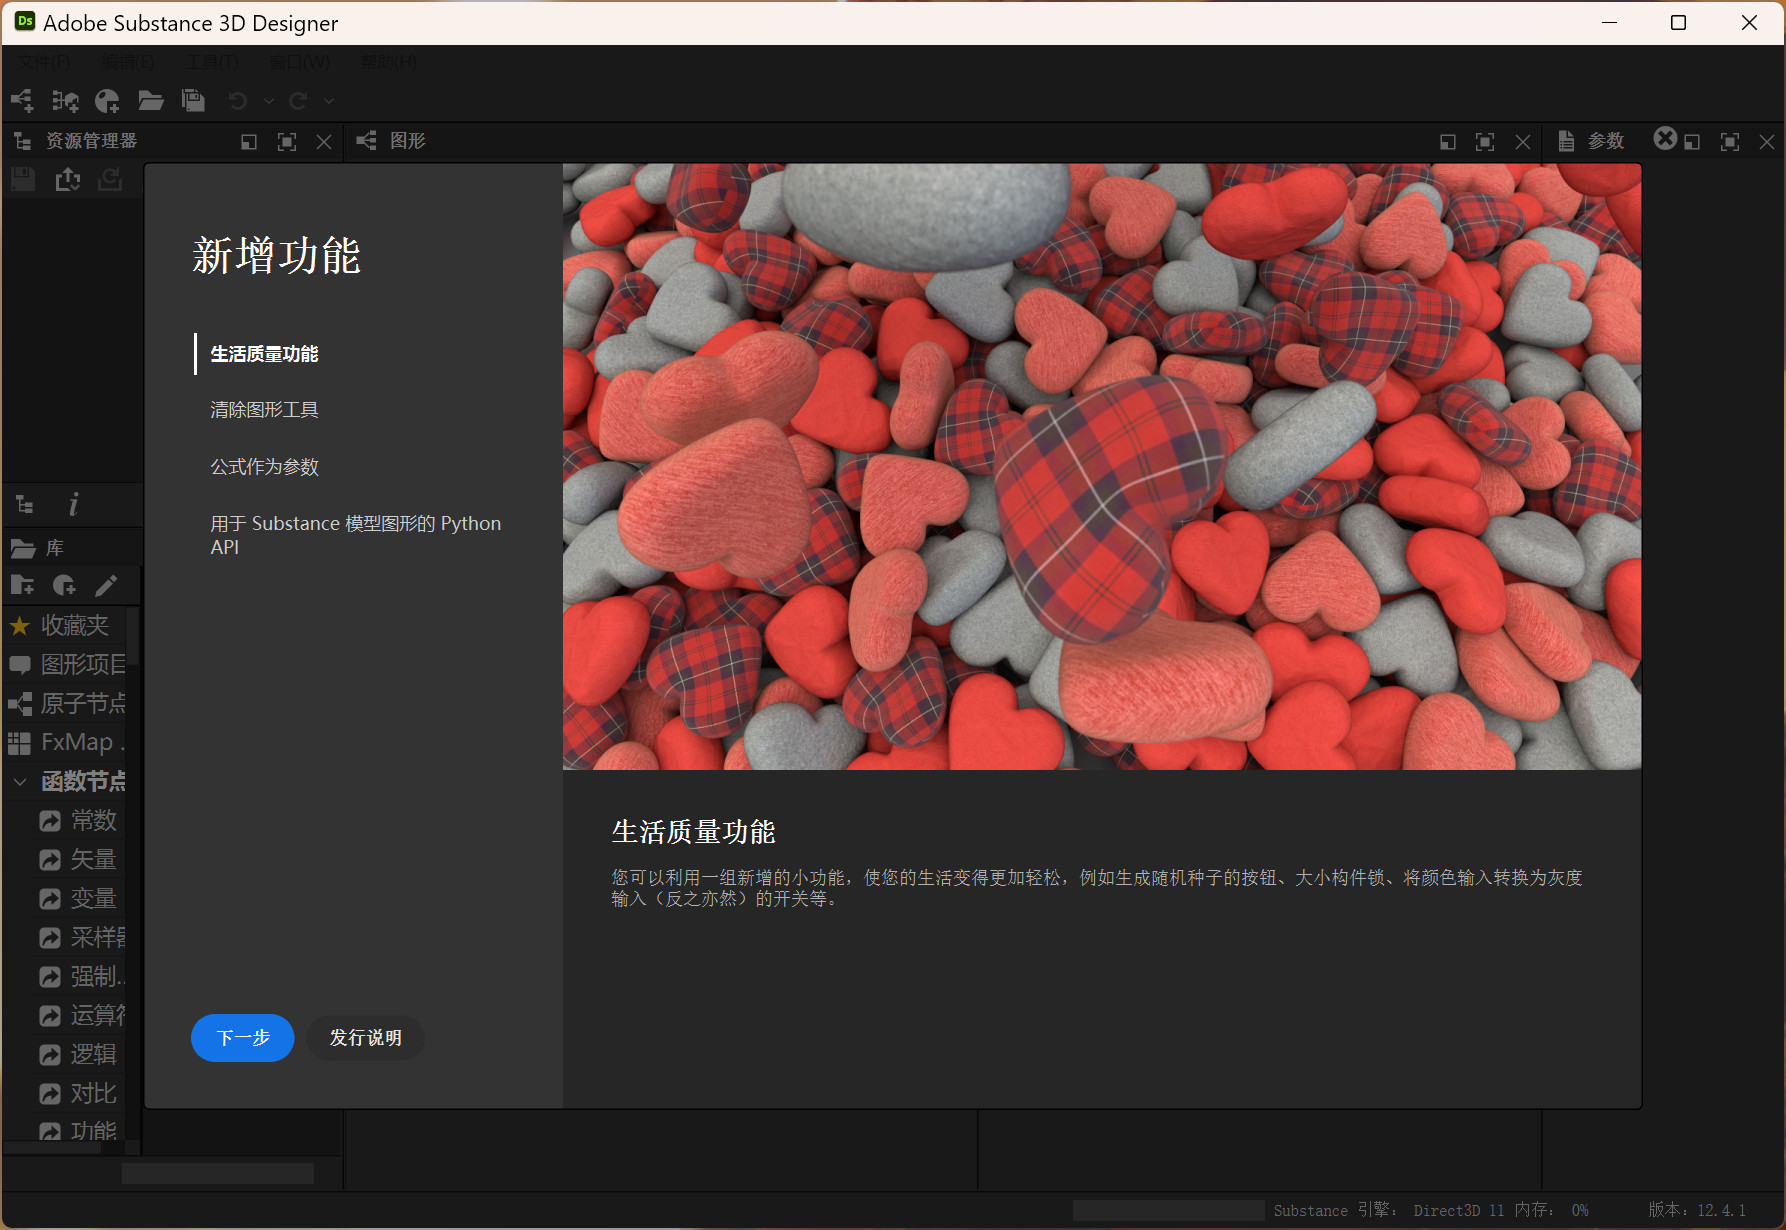 Adobe Substance 3D Designer(3D模型设计软件) 13.1.0.7240中文直装版下载